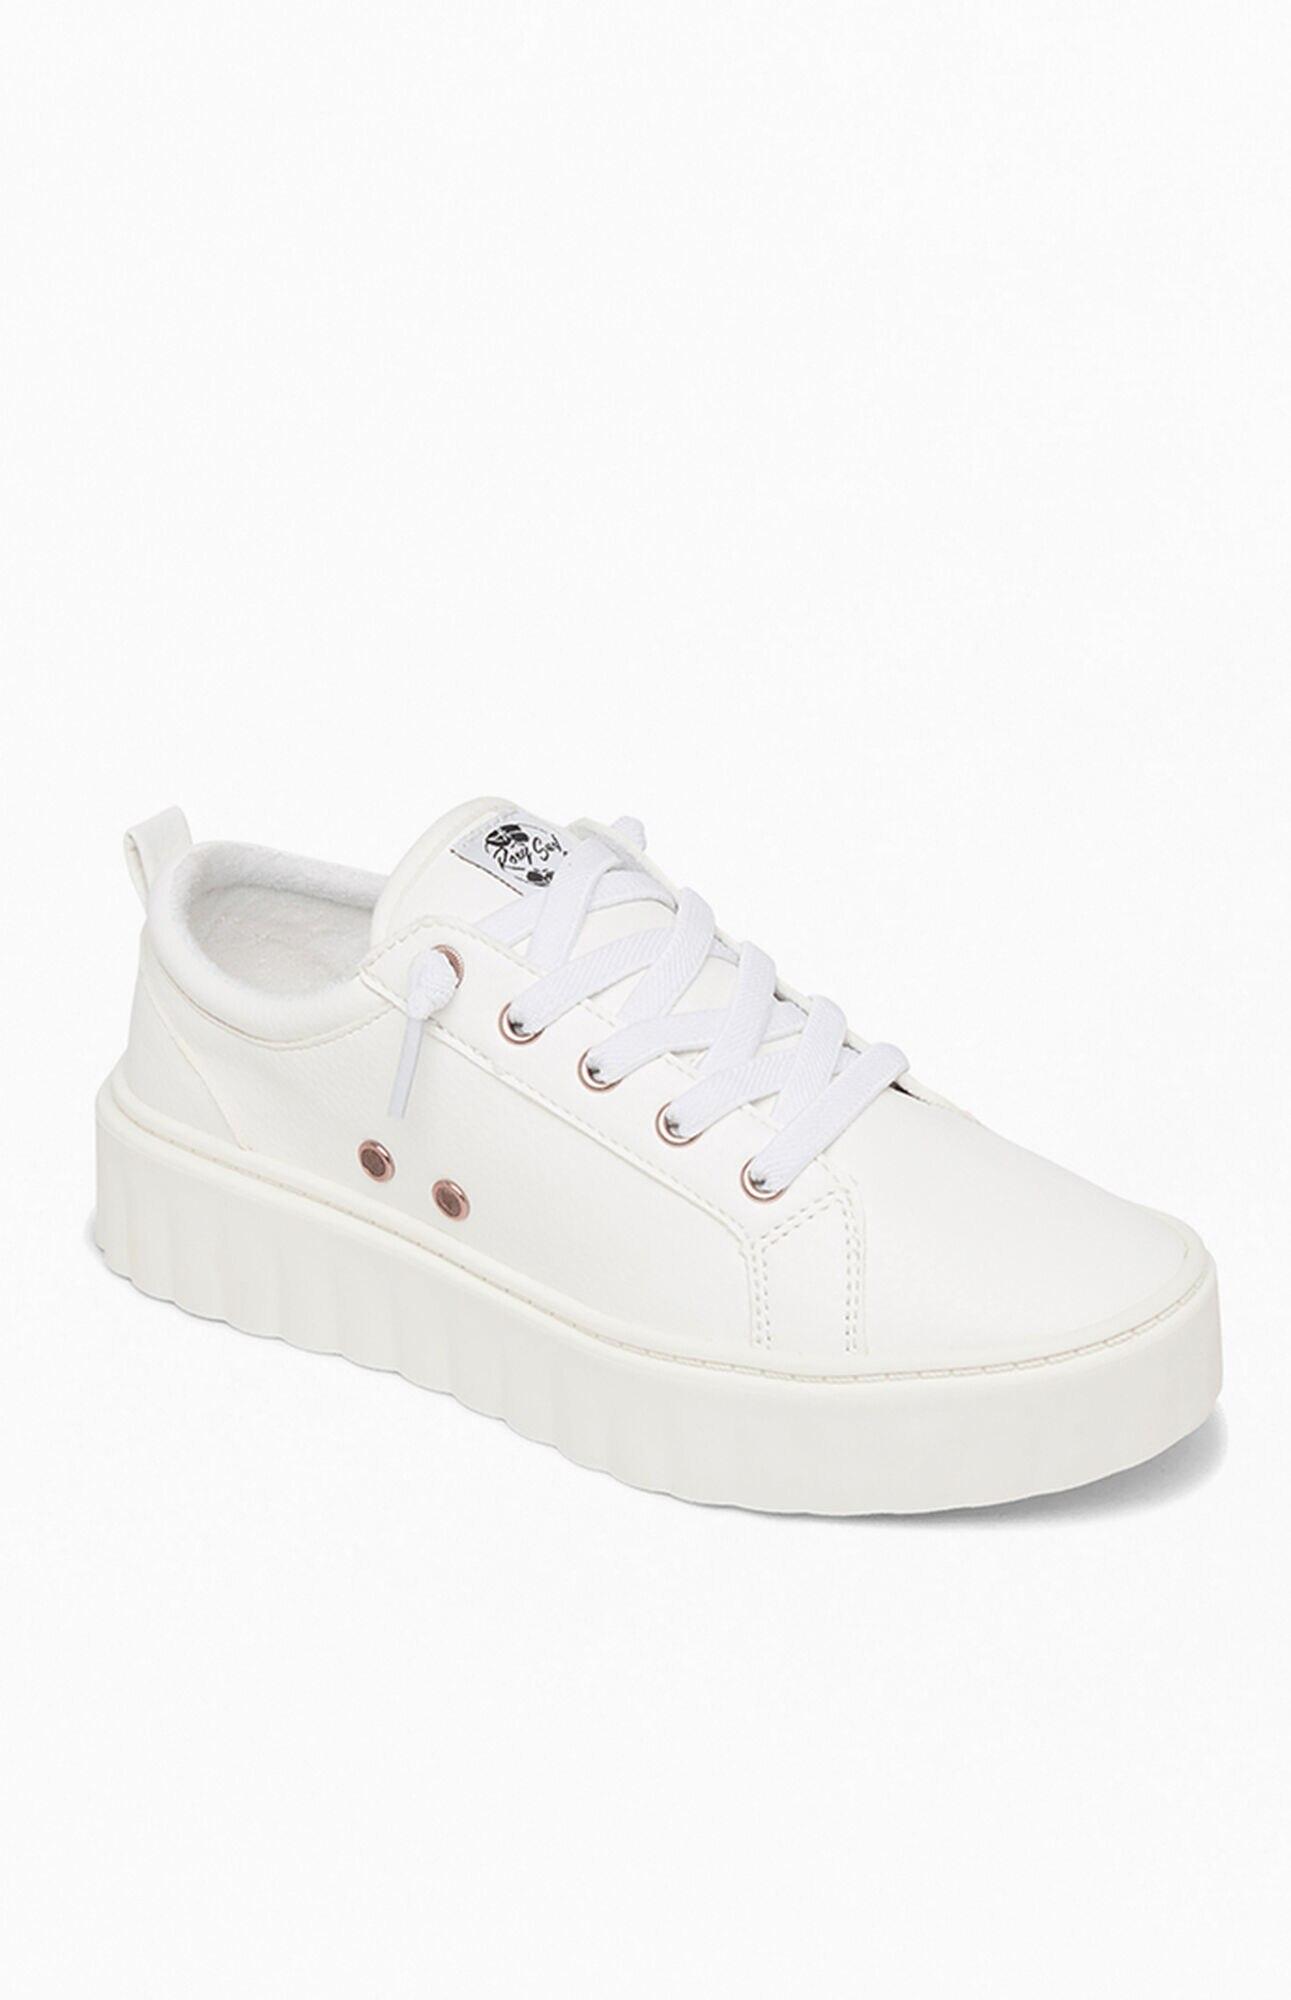 Roxy Sheila Platform Sneakers in White | Lyst